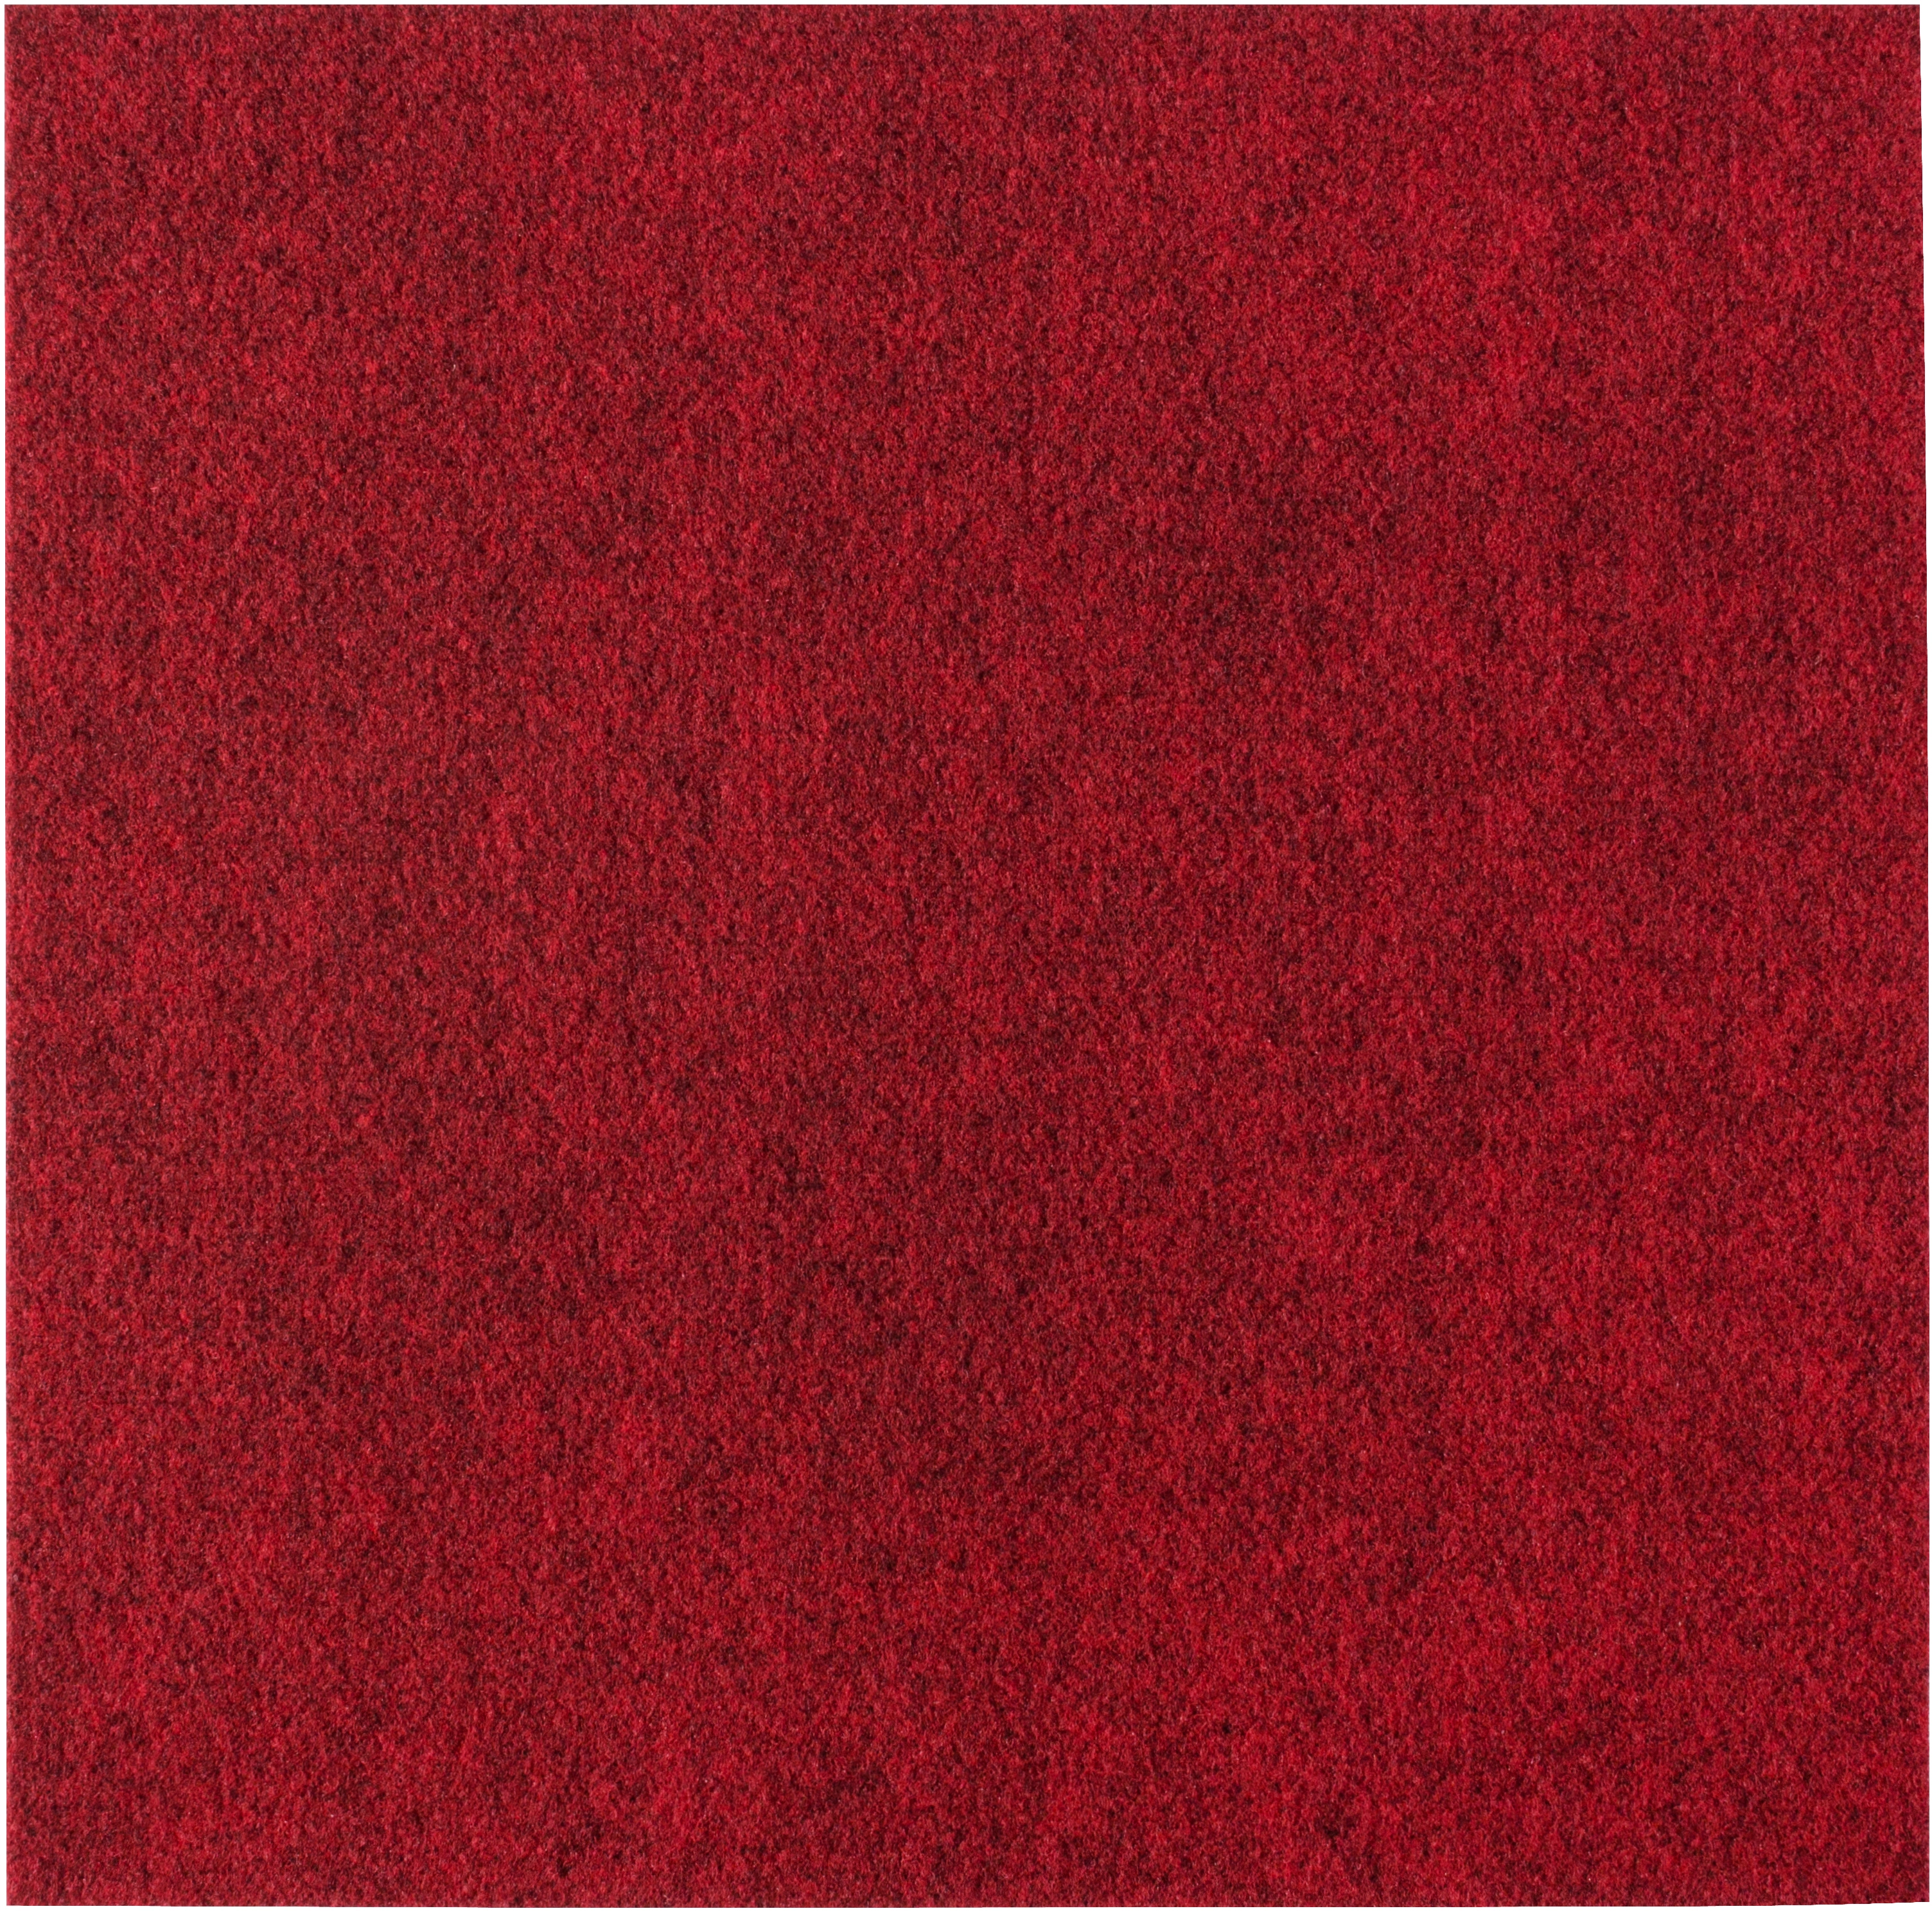 andiamo Teppichfliesen selbstklebend und zuschneidbar 40 x 40 cm -  Bodenbelag aus Nadelfilz zuschneidbare Filzplatten selbstklebend 4 m² - 25  Stück Standard Rot - Klickfliese